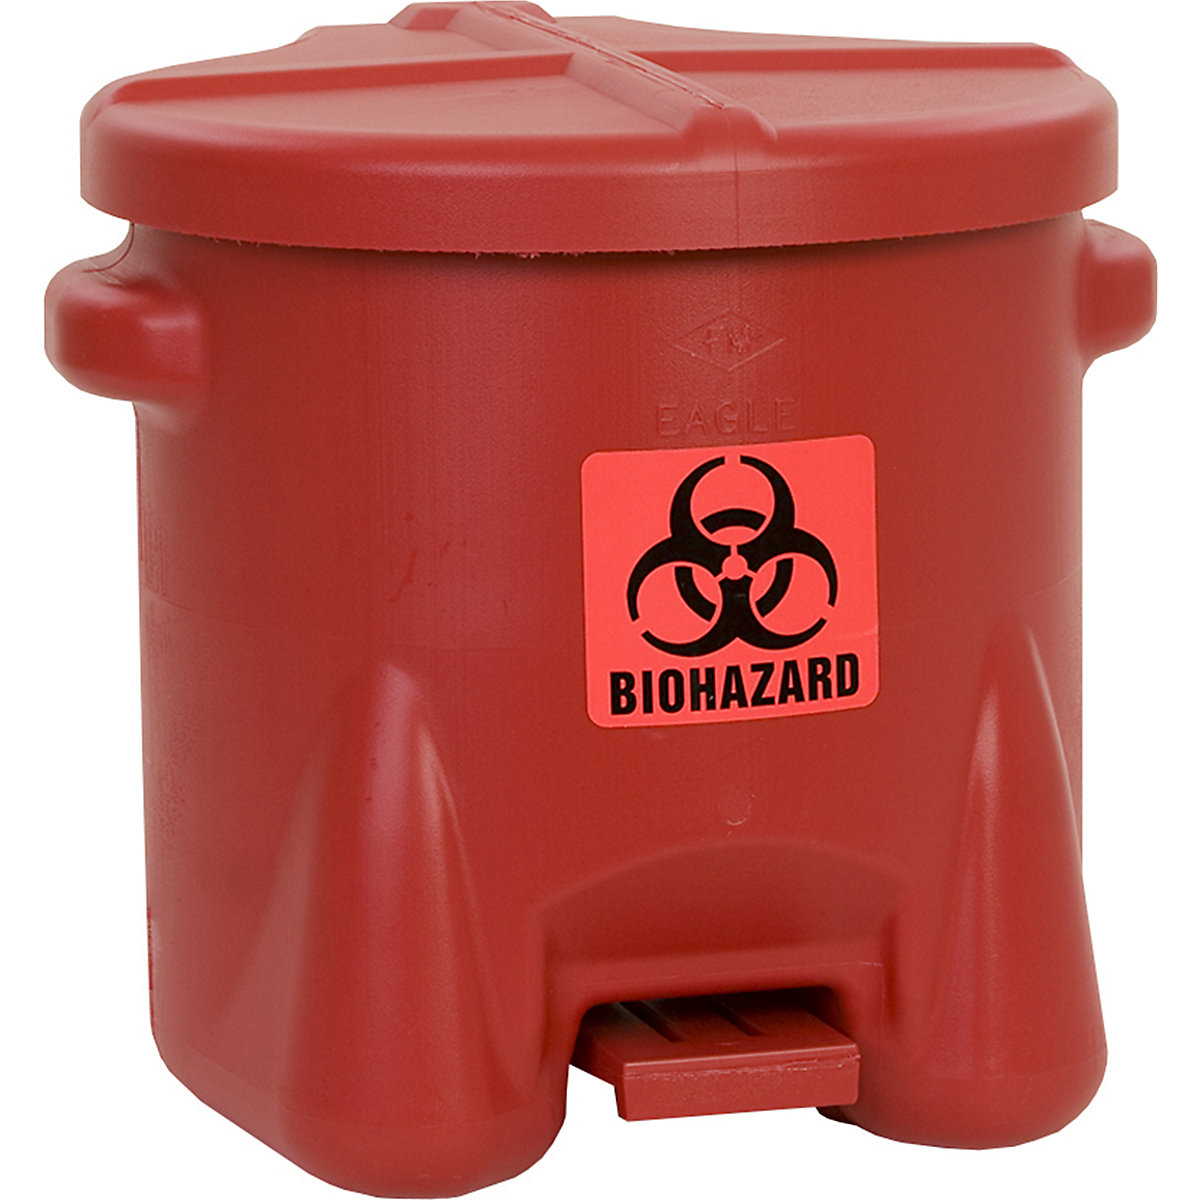 Contenitore di sicurezza in PE per lo smaltimento, per rifiuti a rischio biologico - Justrite